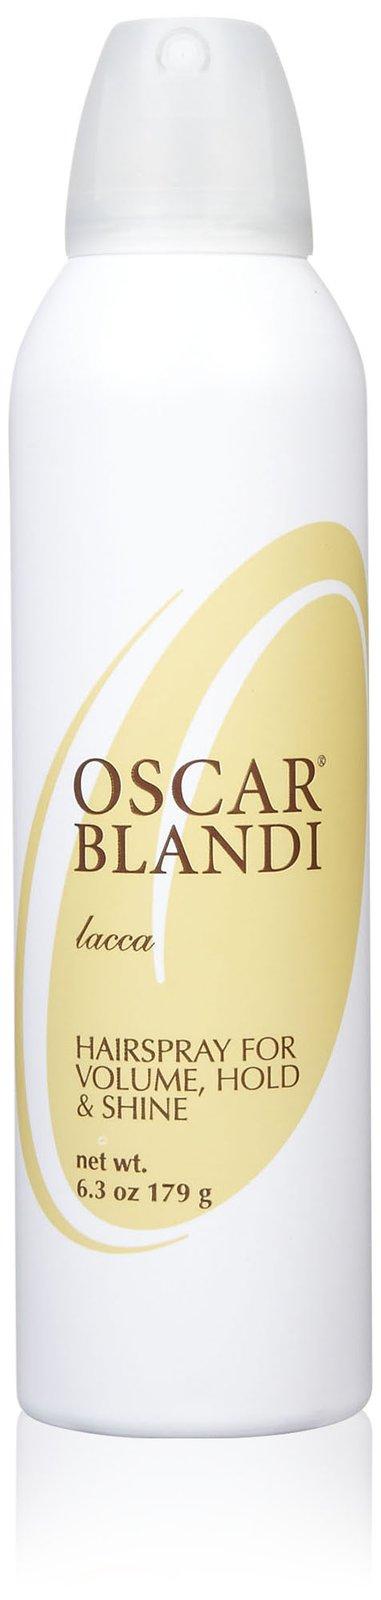 Oscar Blandi Lacca Hairspray